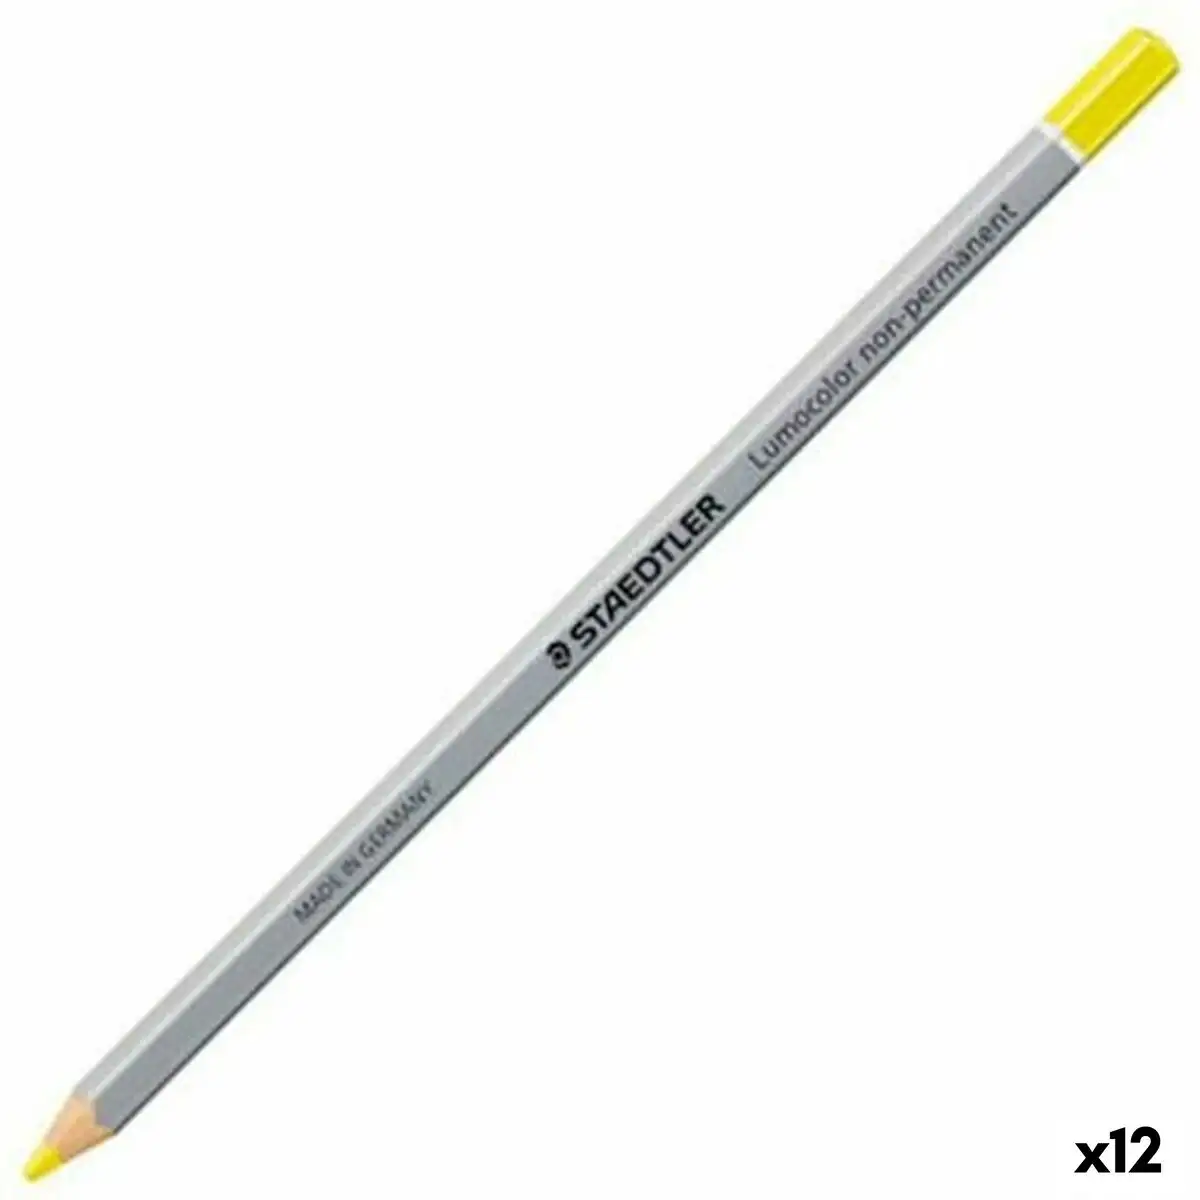 Crayons staedtler omnichrom jaune 12 unites _6160. DIAYTAR SENEGAL - L'Art de Magasiner sans Frontières. Parcourez notre vaste sélection d'articles et trouvez tout ce dont vous avez besoin, du chic à l'authentique, du moderne au traditionnel.